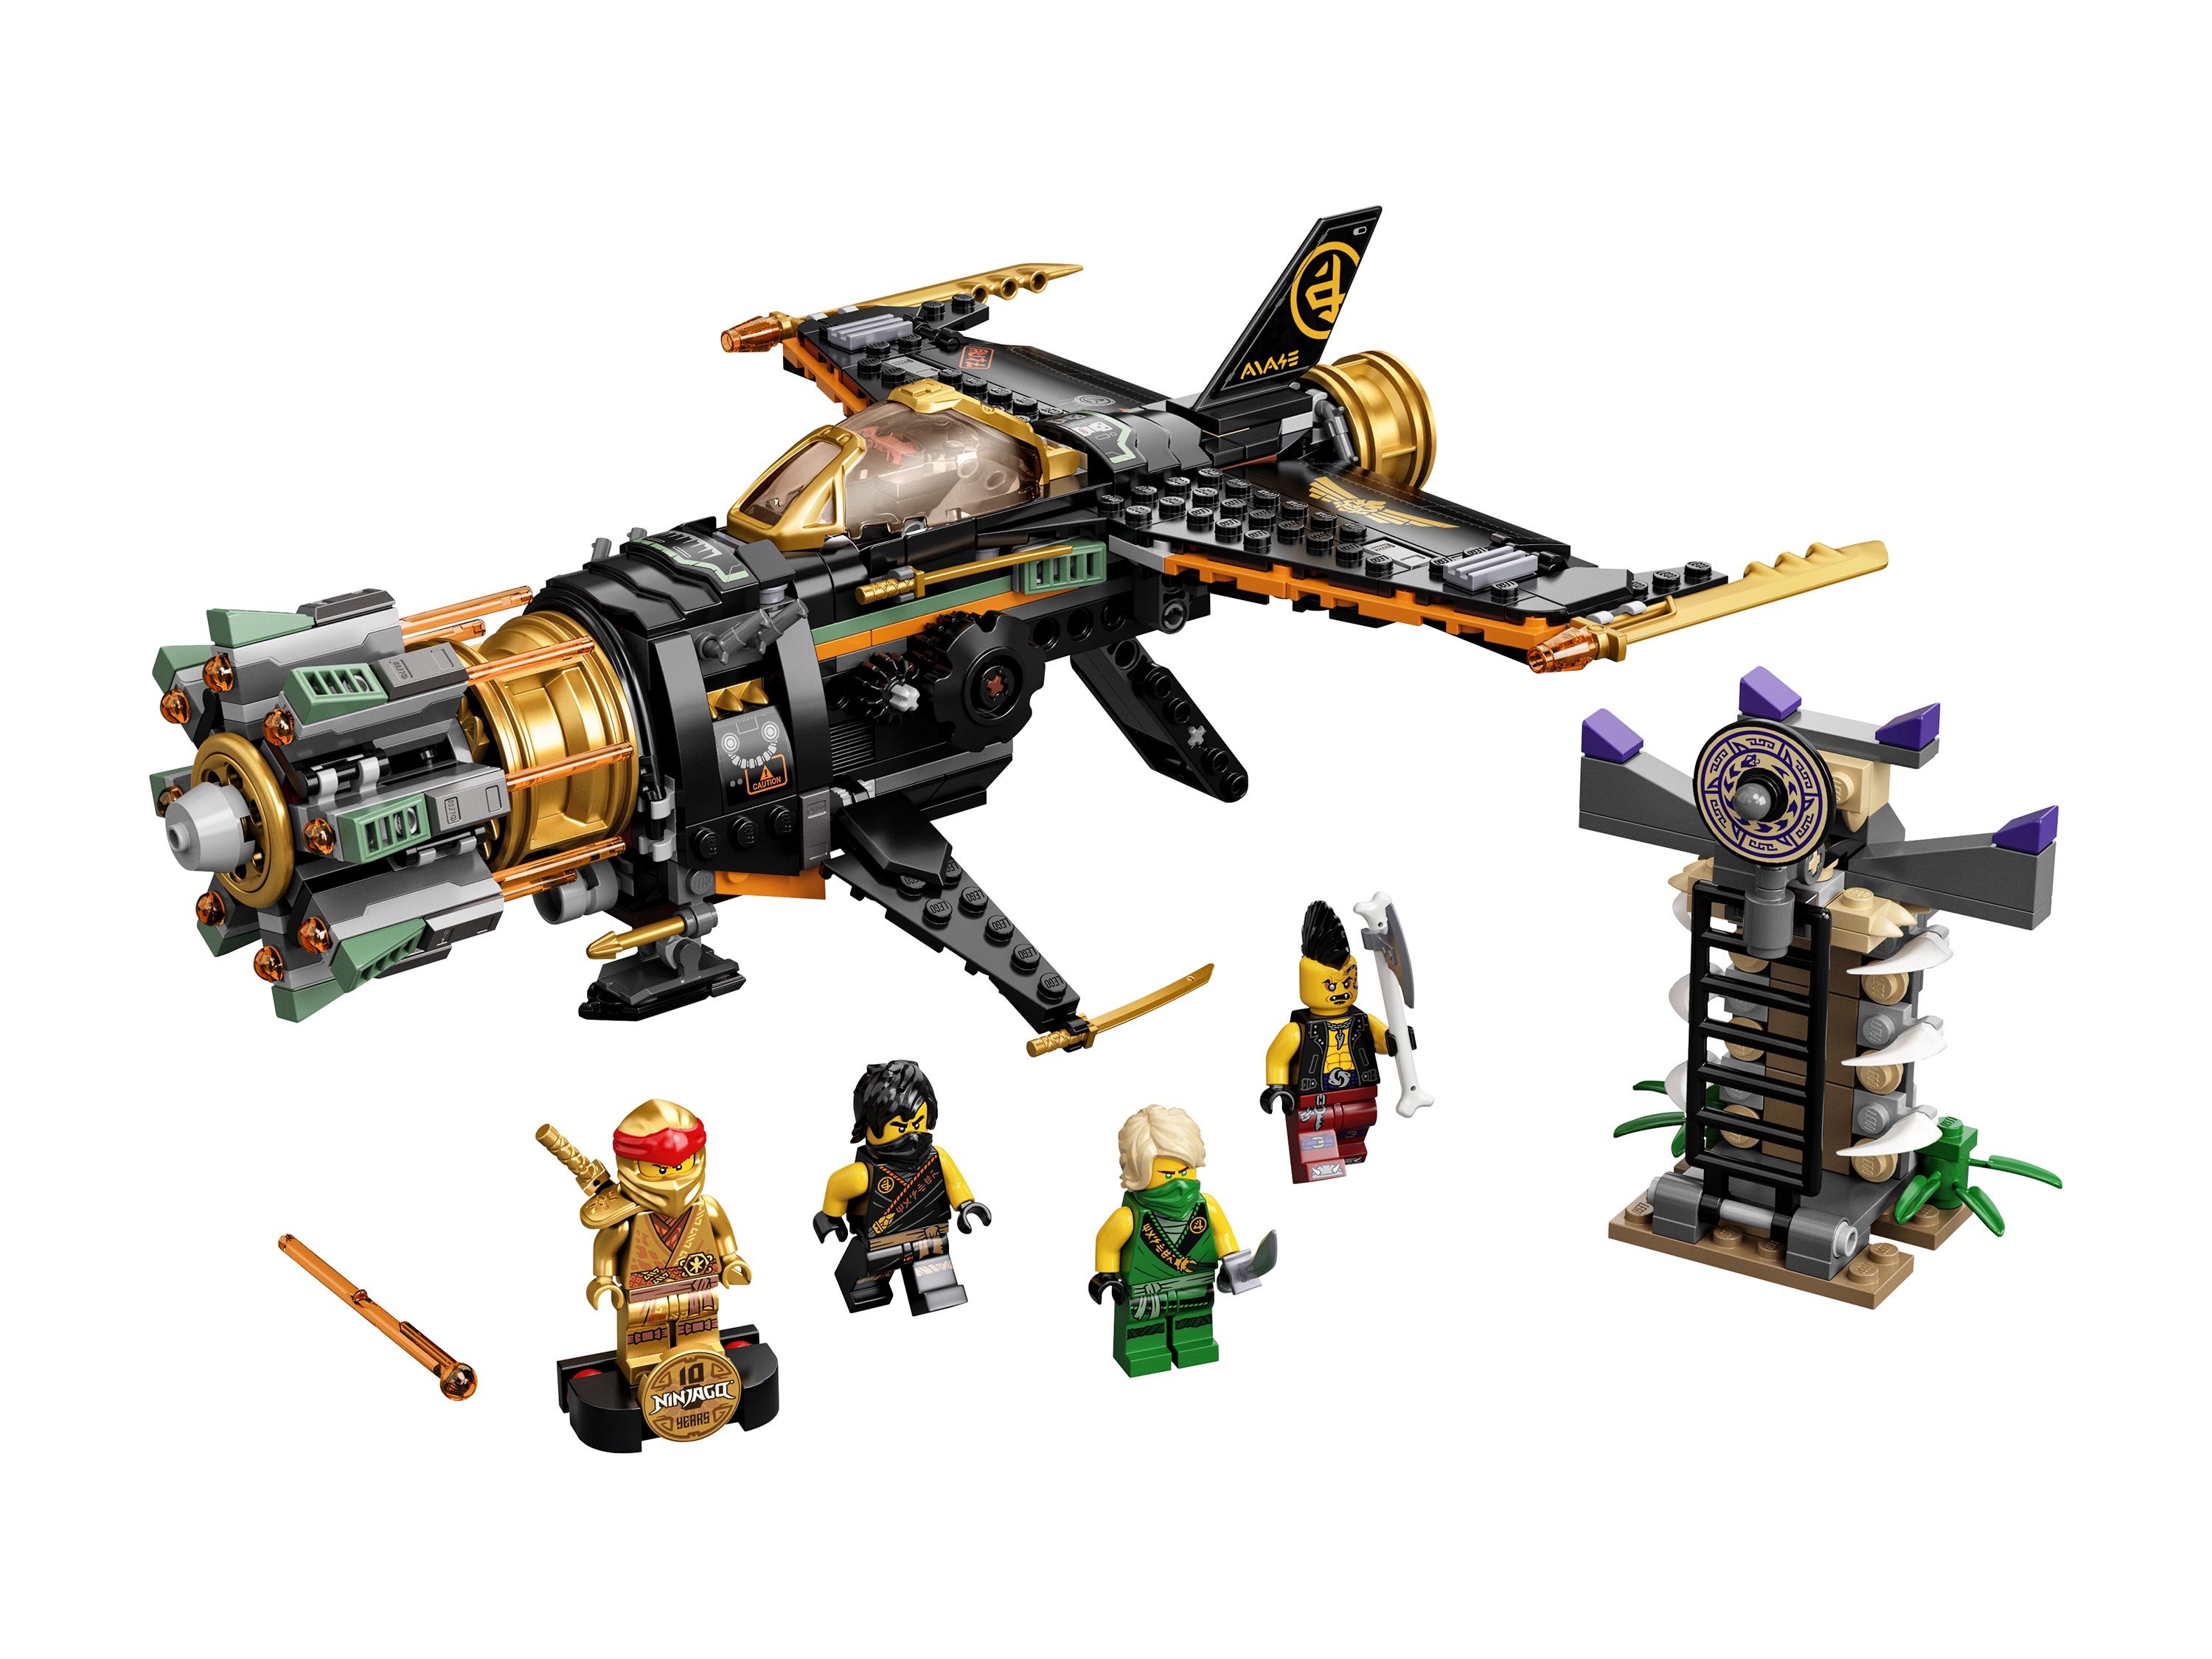 Конструктор LEGO Ninjago «Скорострельный истребитель Коула»  71736 / 449 деталей